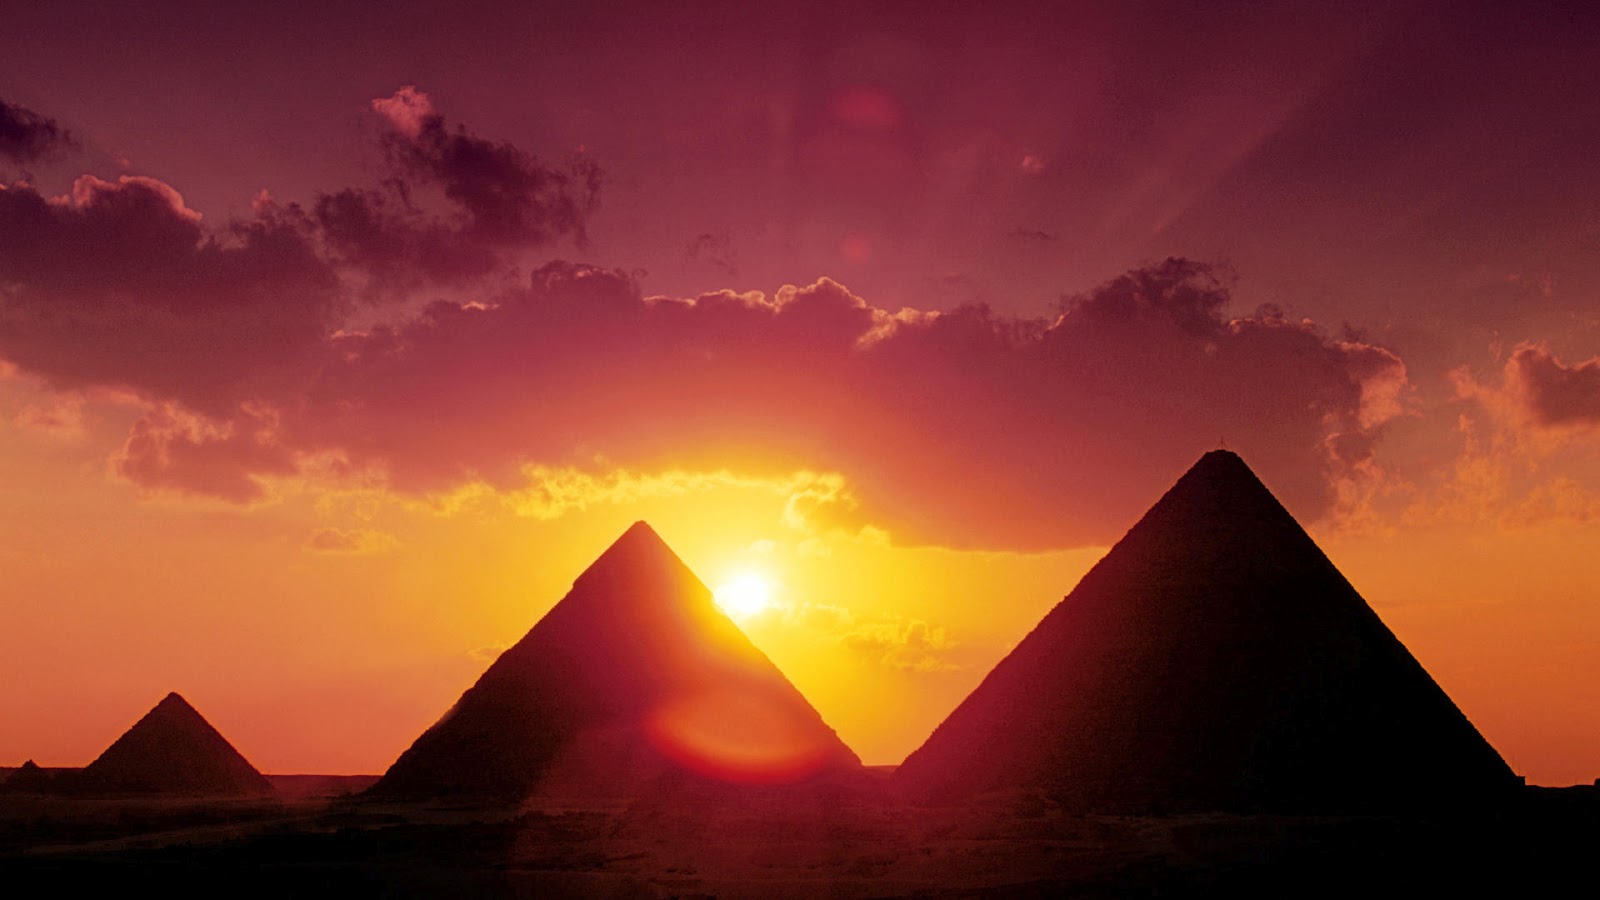 pyramiden von gizeh tapete,pyramide,himmel,sonnenuntergang,orange,monument